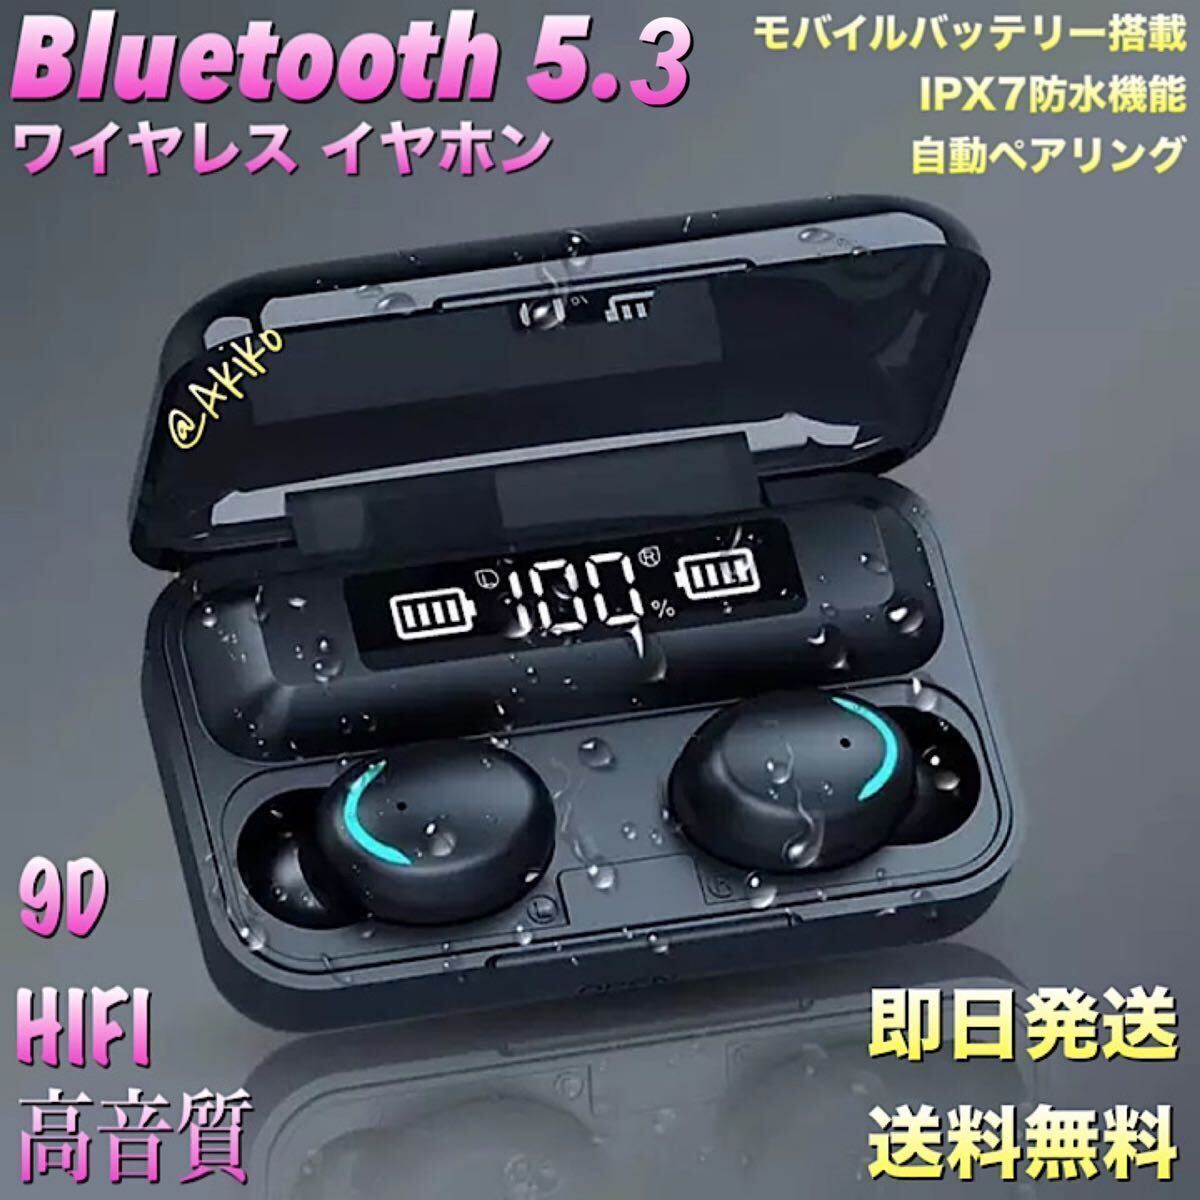 Bluetooth 5.3ワイヤレスイヤホン、バッテリー大容量2200mAh 防水!! iOS アンドロイド対応！_画像1